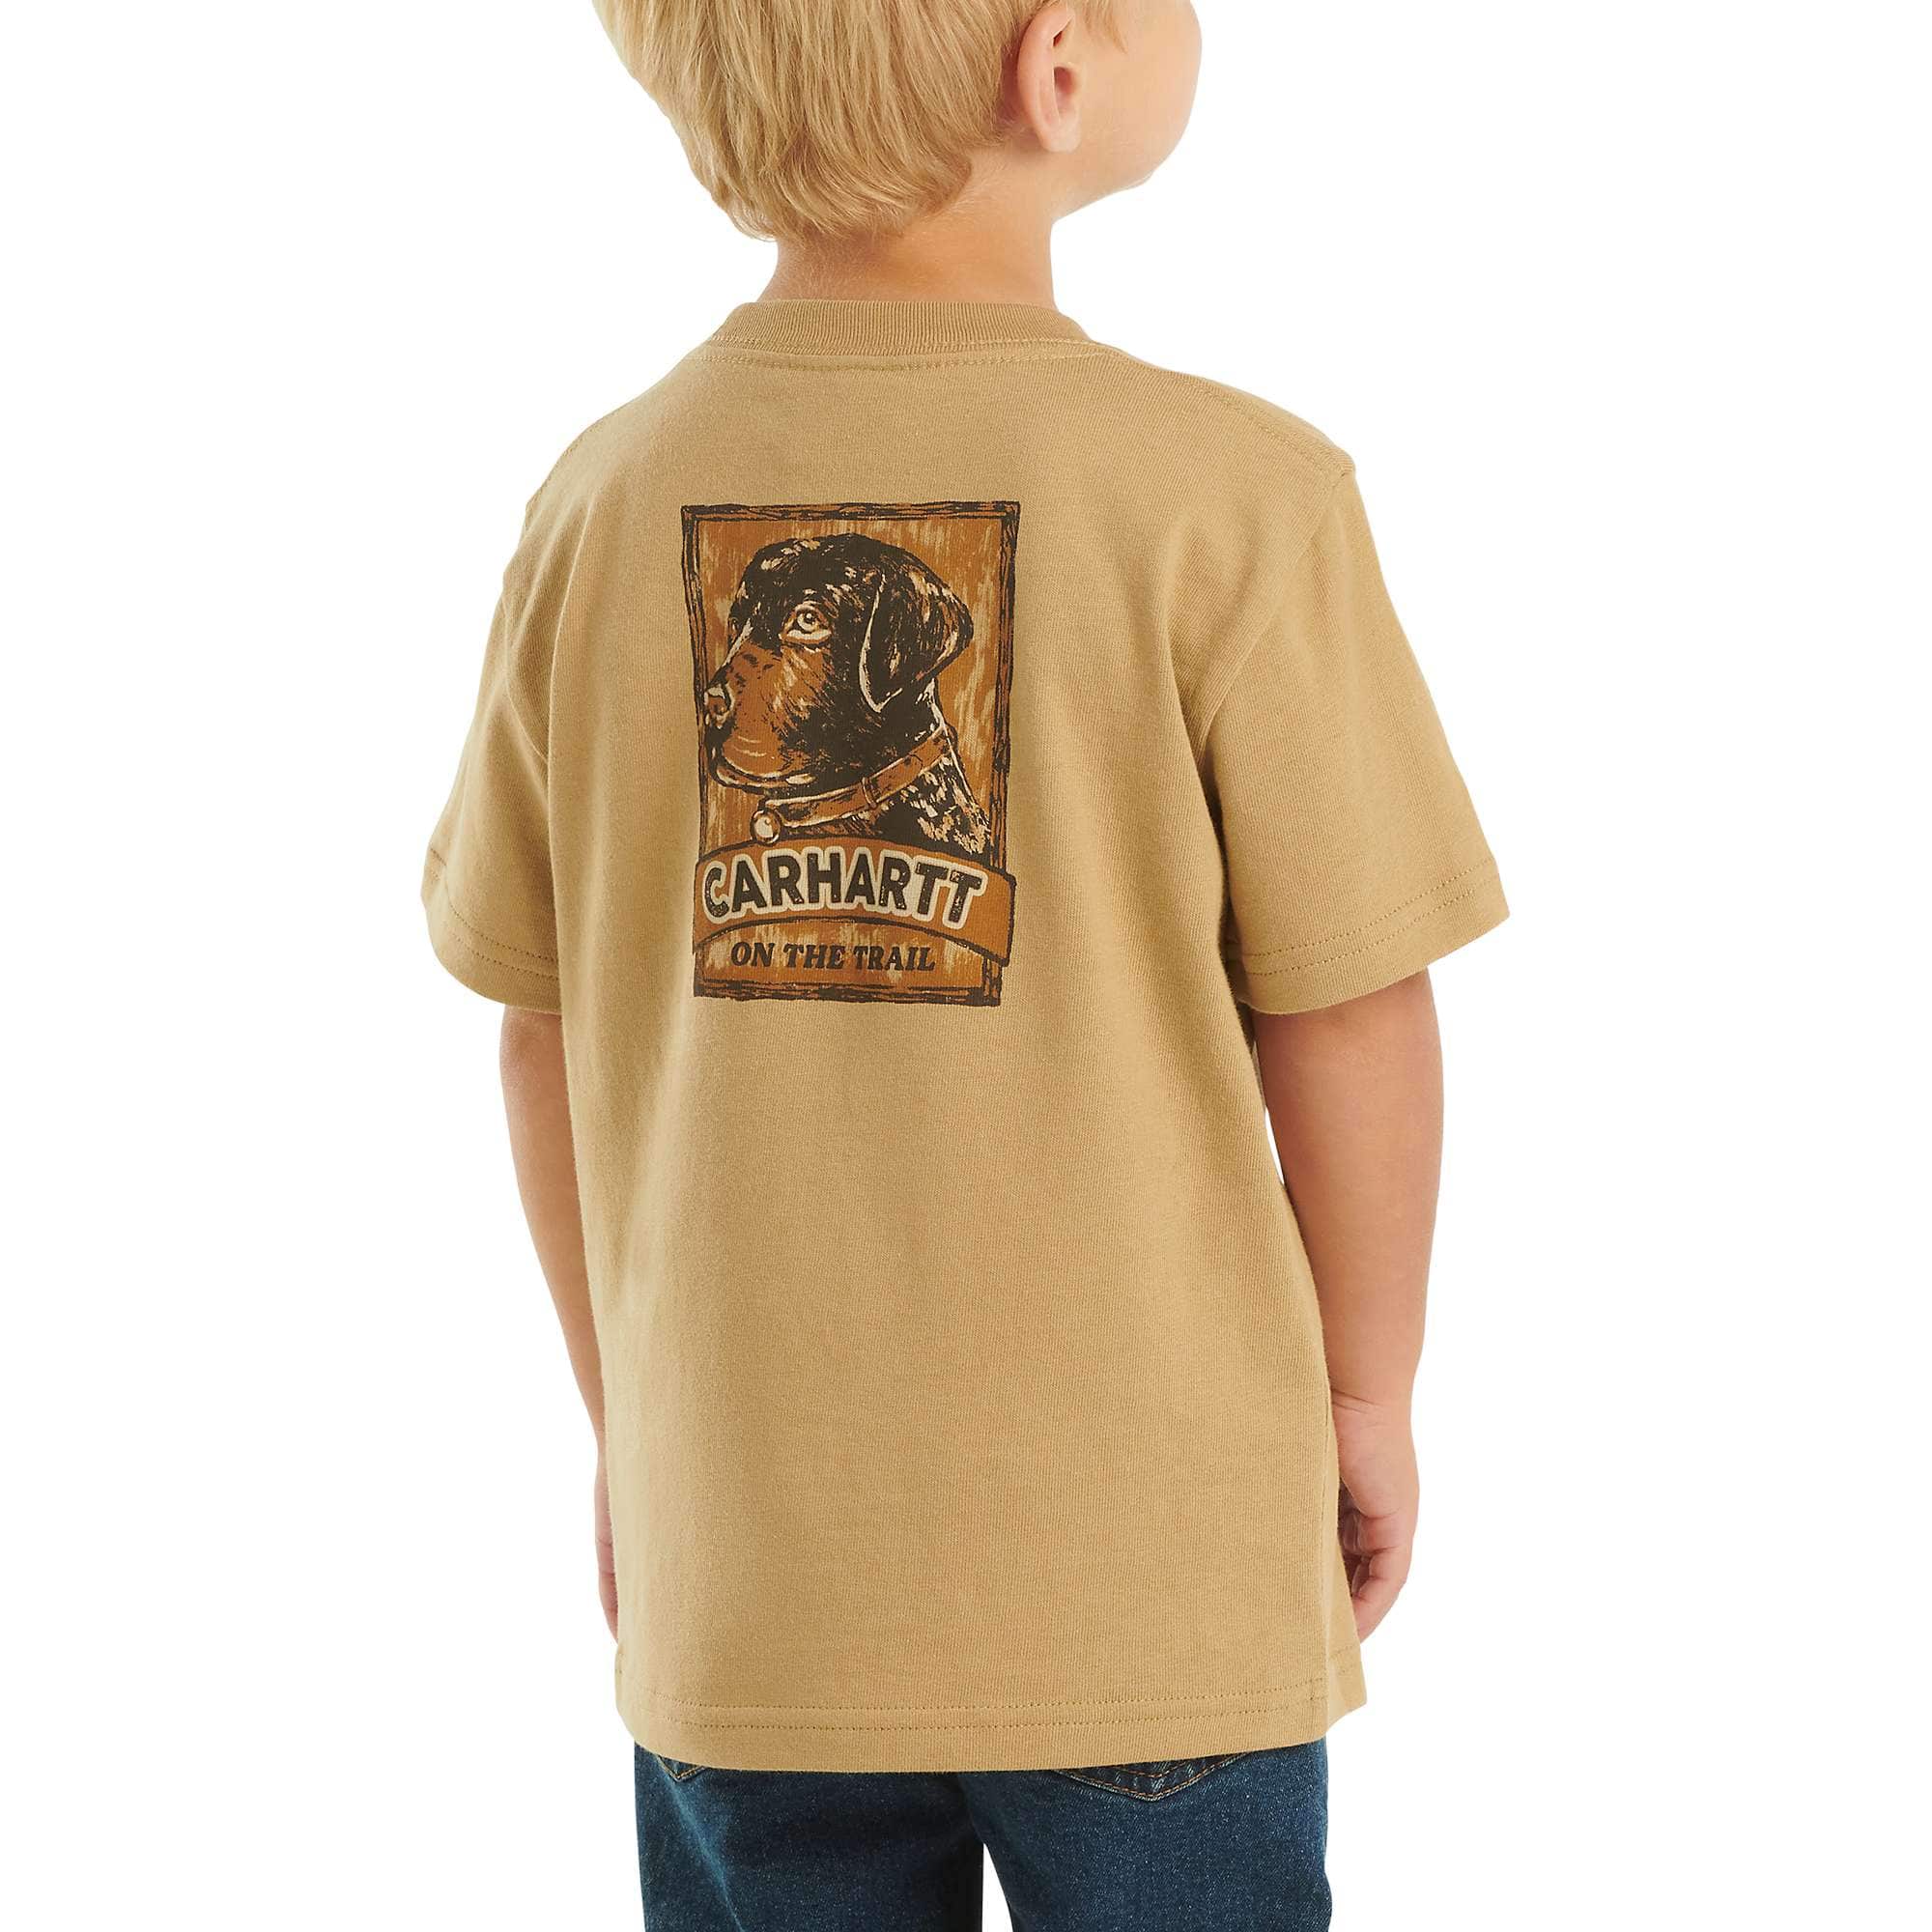 Boys' Short-Sleeve Dog T-Shirt (Toddler/Child/Youth)